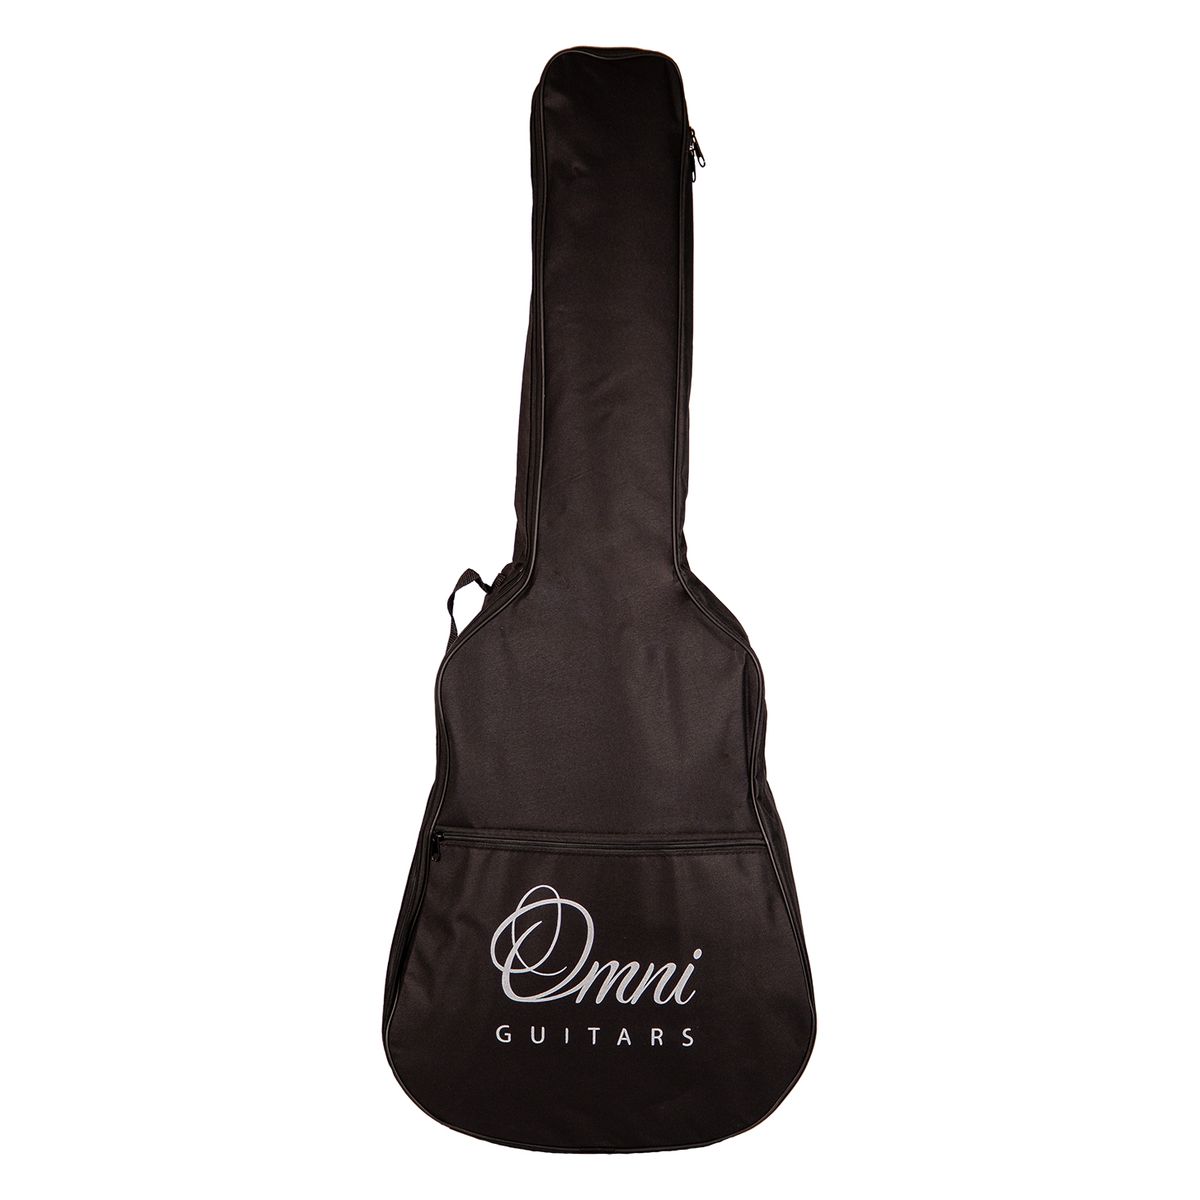 OMNI CG-710YS классическая гитара, массив ели/палисандр, Накладка Палисандр, Цвет натуральный, чехол